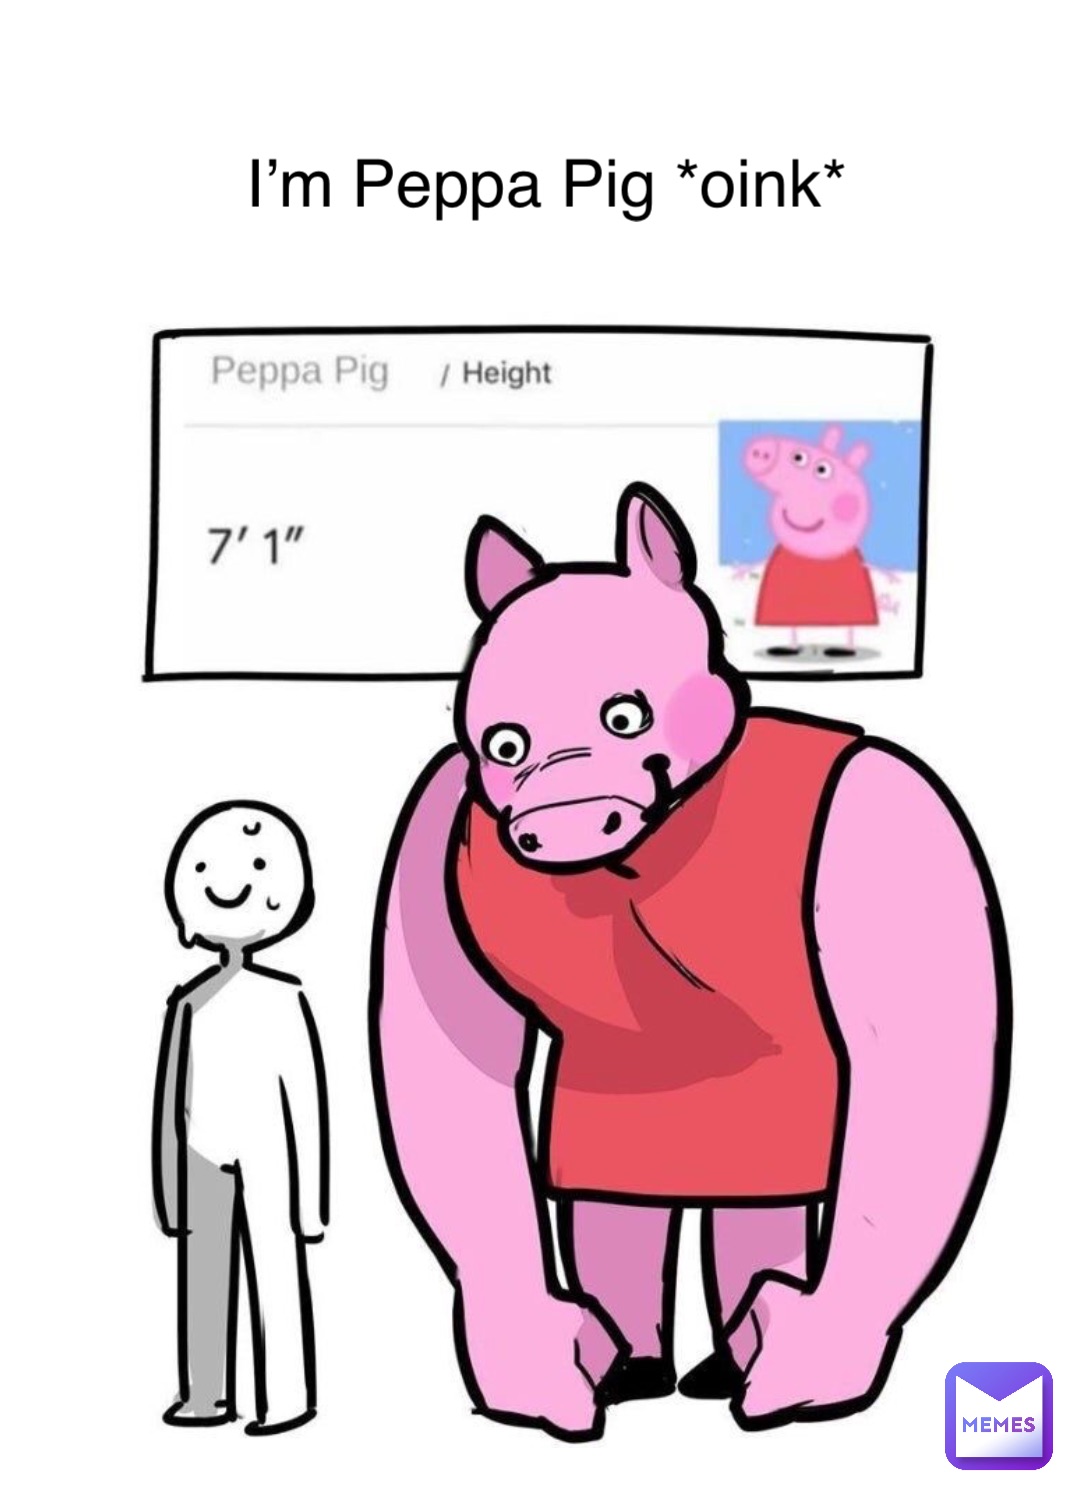 I’m Peppa Pig *oink*